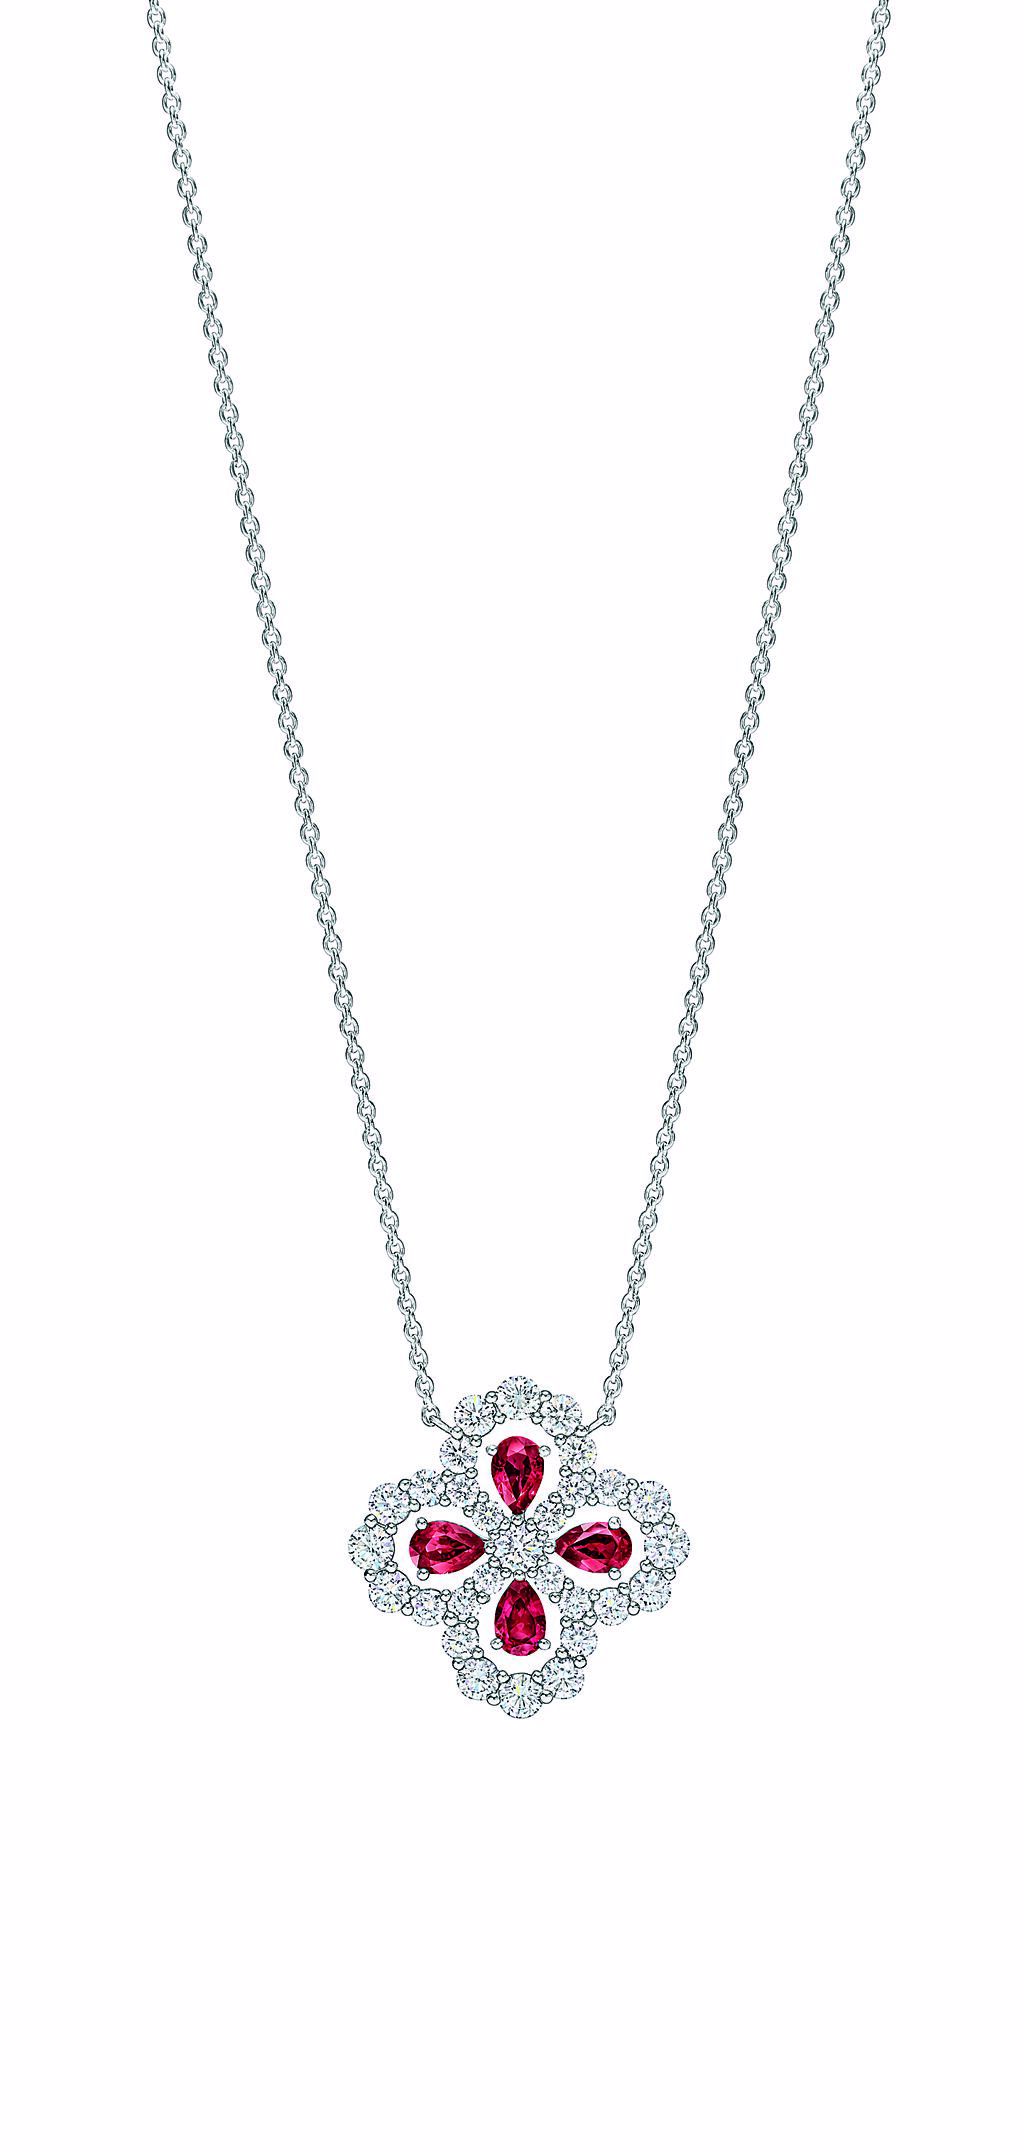 海瑞溫斯頓主打Diamond Loop系列珠寶，水滴型紅寶石構成花朵圖案，約45萬元。（海瑞溫斯頓提供）